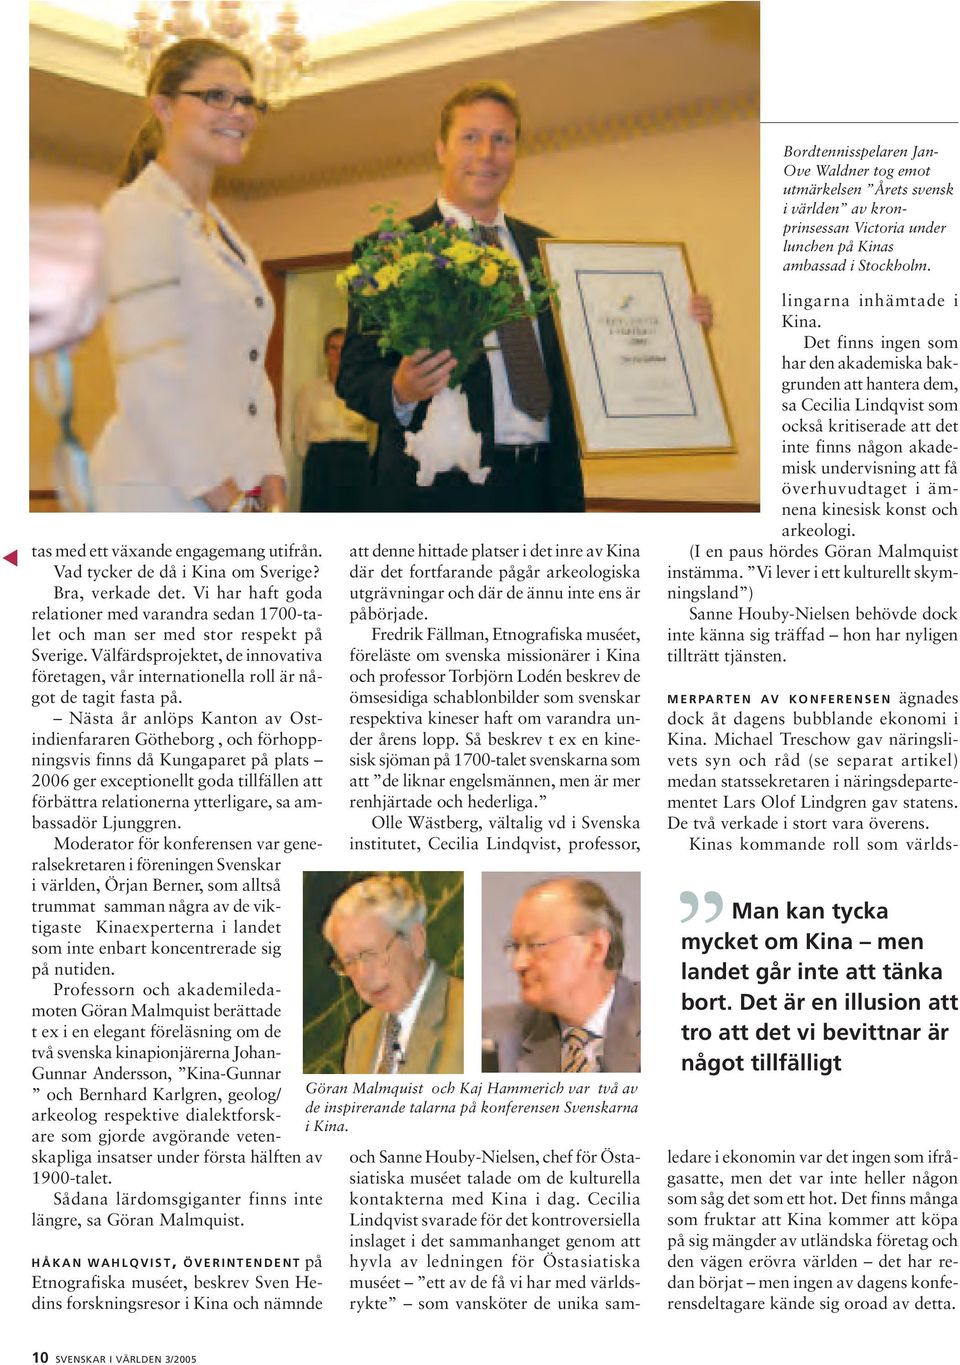 Nästa år anlöps Kanton av Ostindienfararen Götheborg, och förhoppningsvis finns då Kungaparet på plats 2006 ger exceptionellt goda tillfällen att förbättra relationerna ytterligare, sa ambassadör